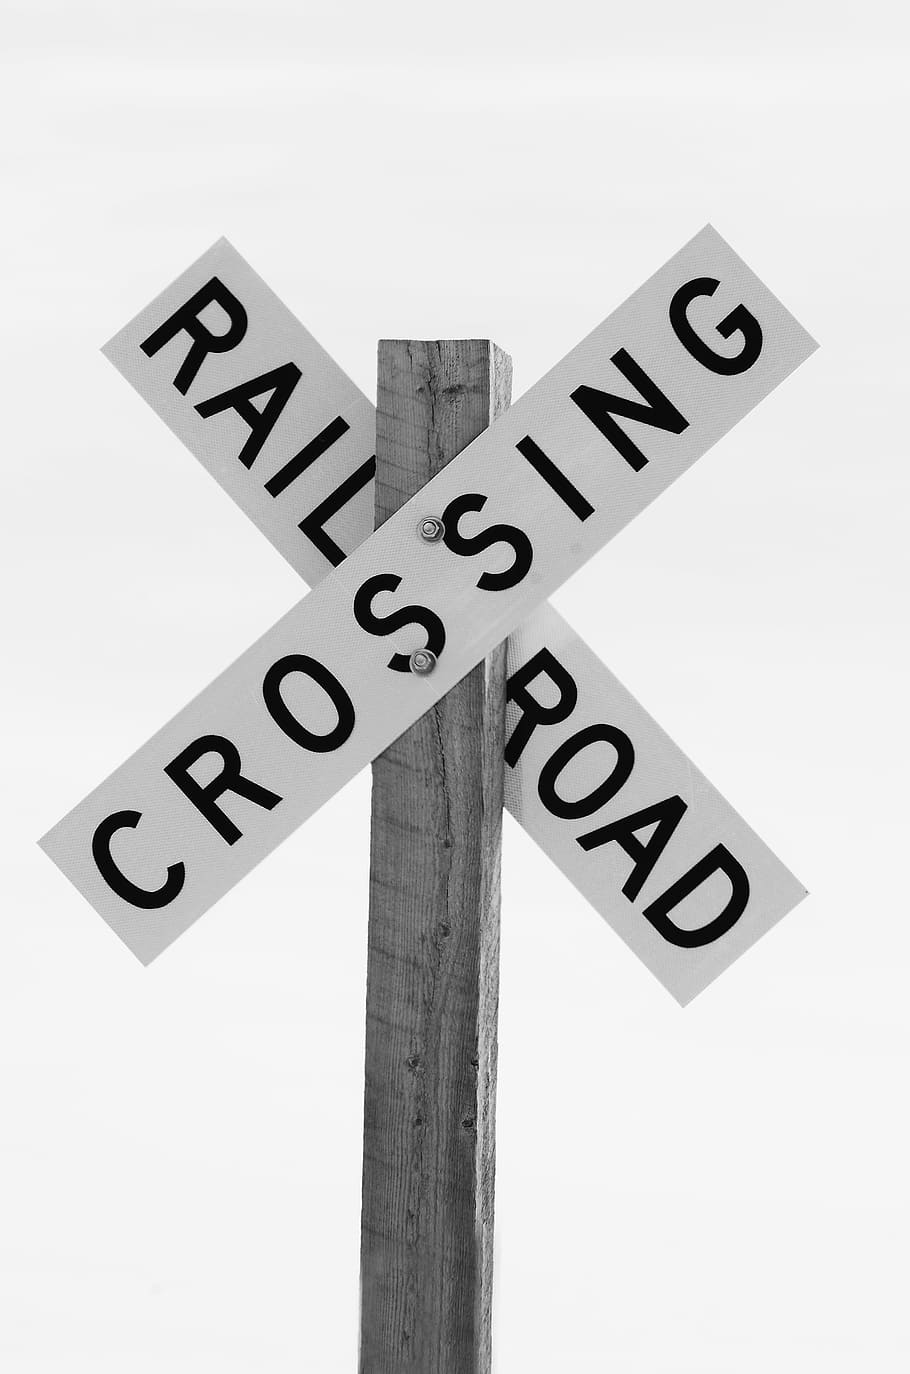 ferrocarril, cruce, señalización, cruce de ferrocarril, signo, blanco y negro, carretera, advertencia, peligro, tráfico